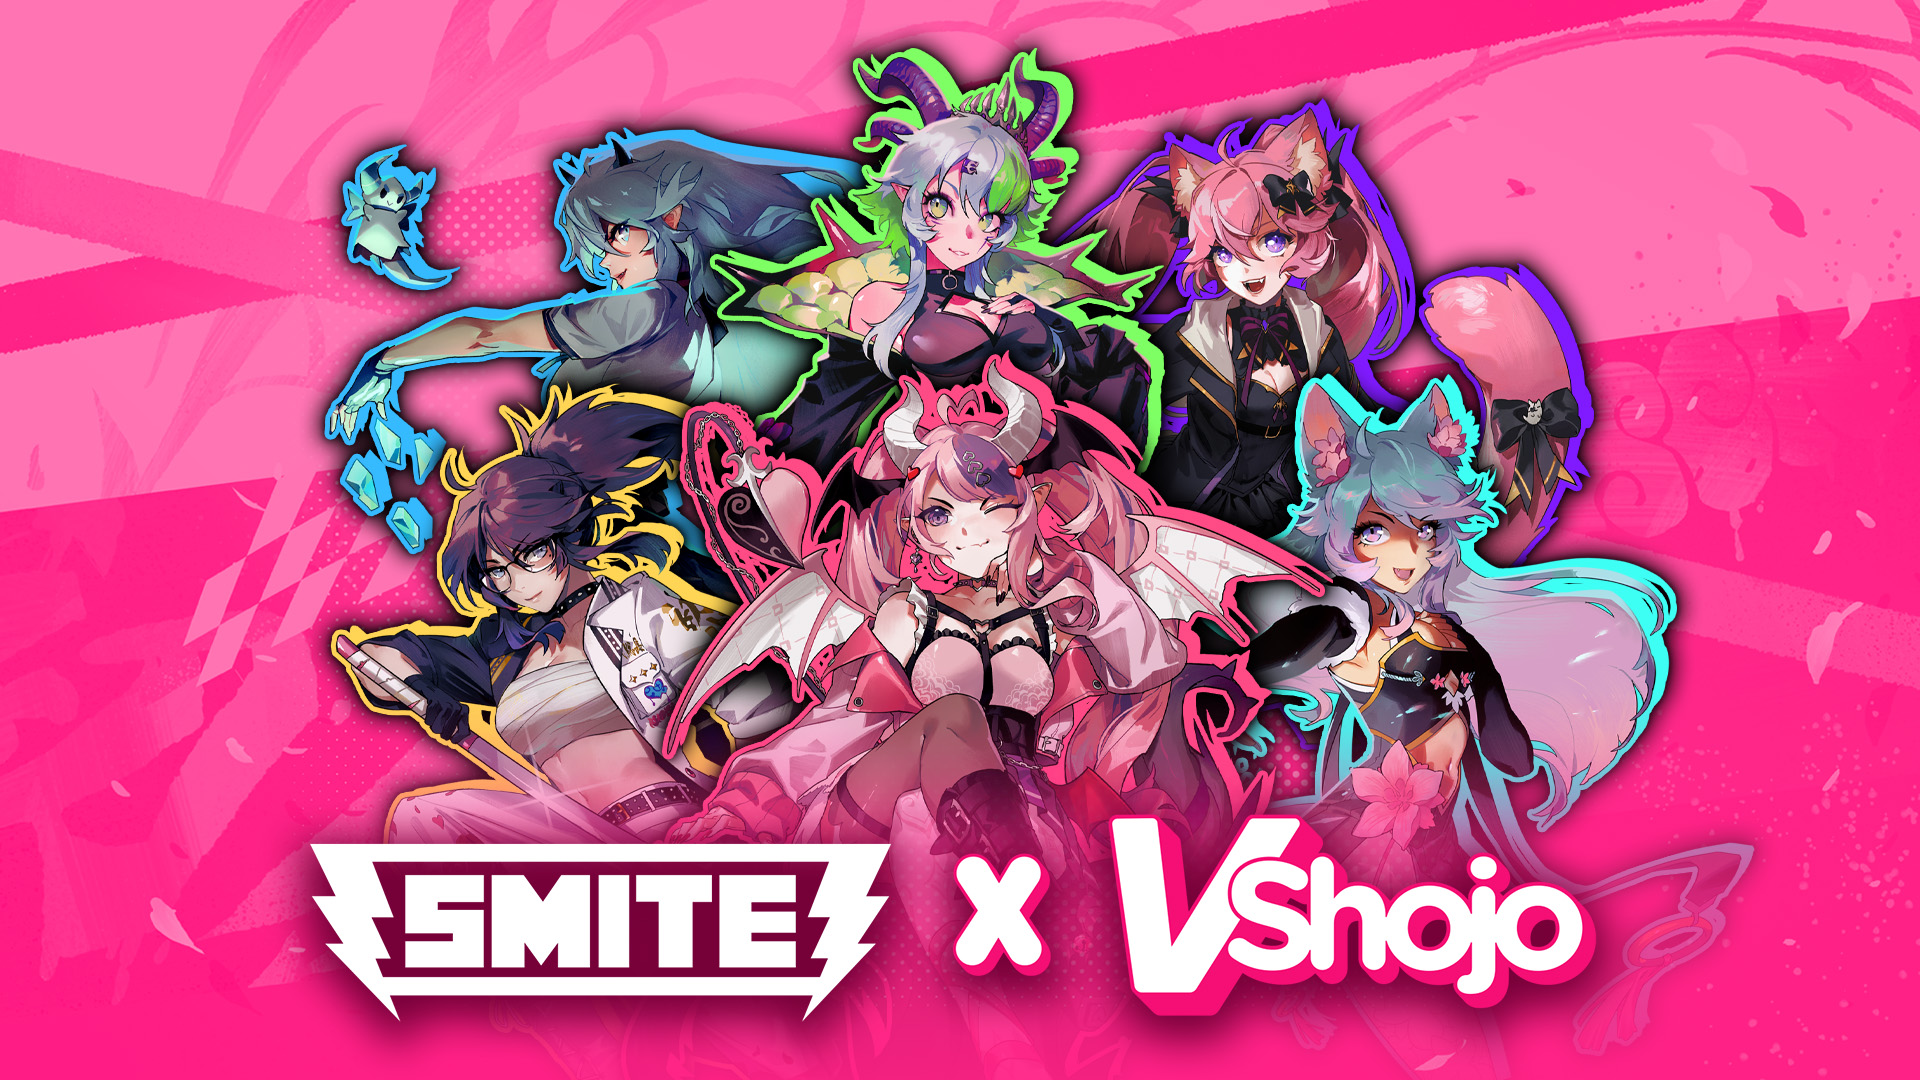 VShojo Stars Take Over SMITE Free-to-Play Game in Collaboration